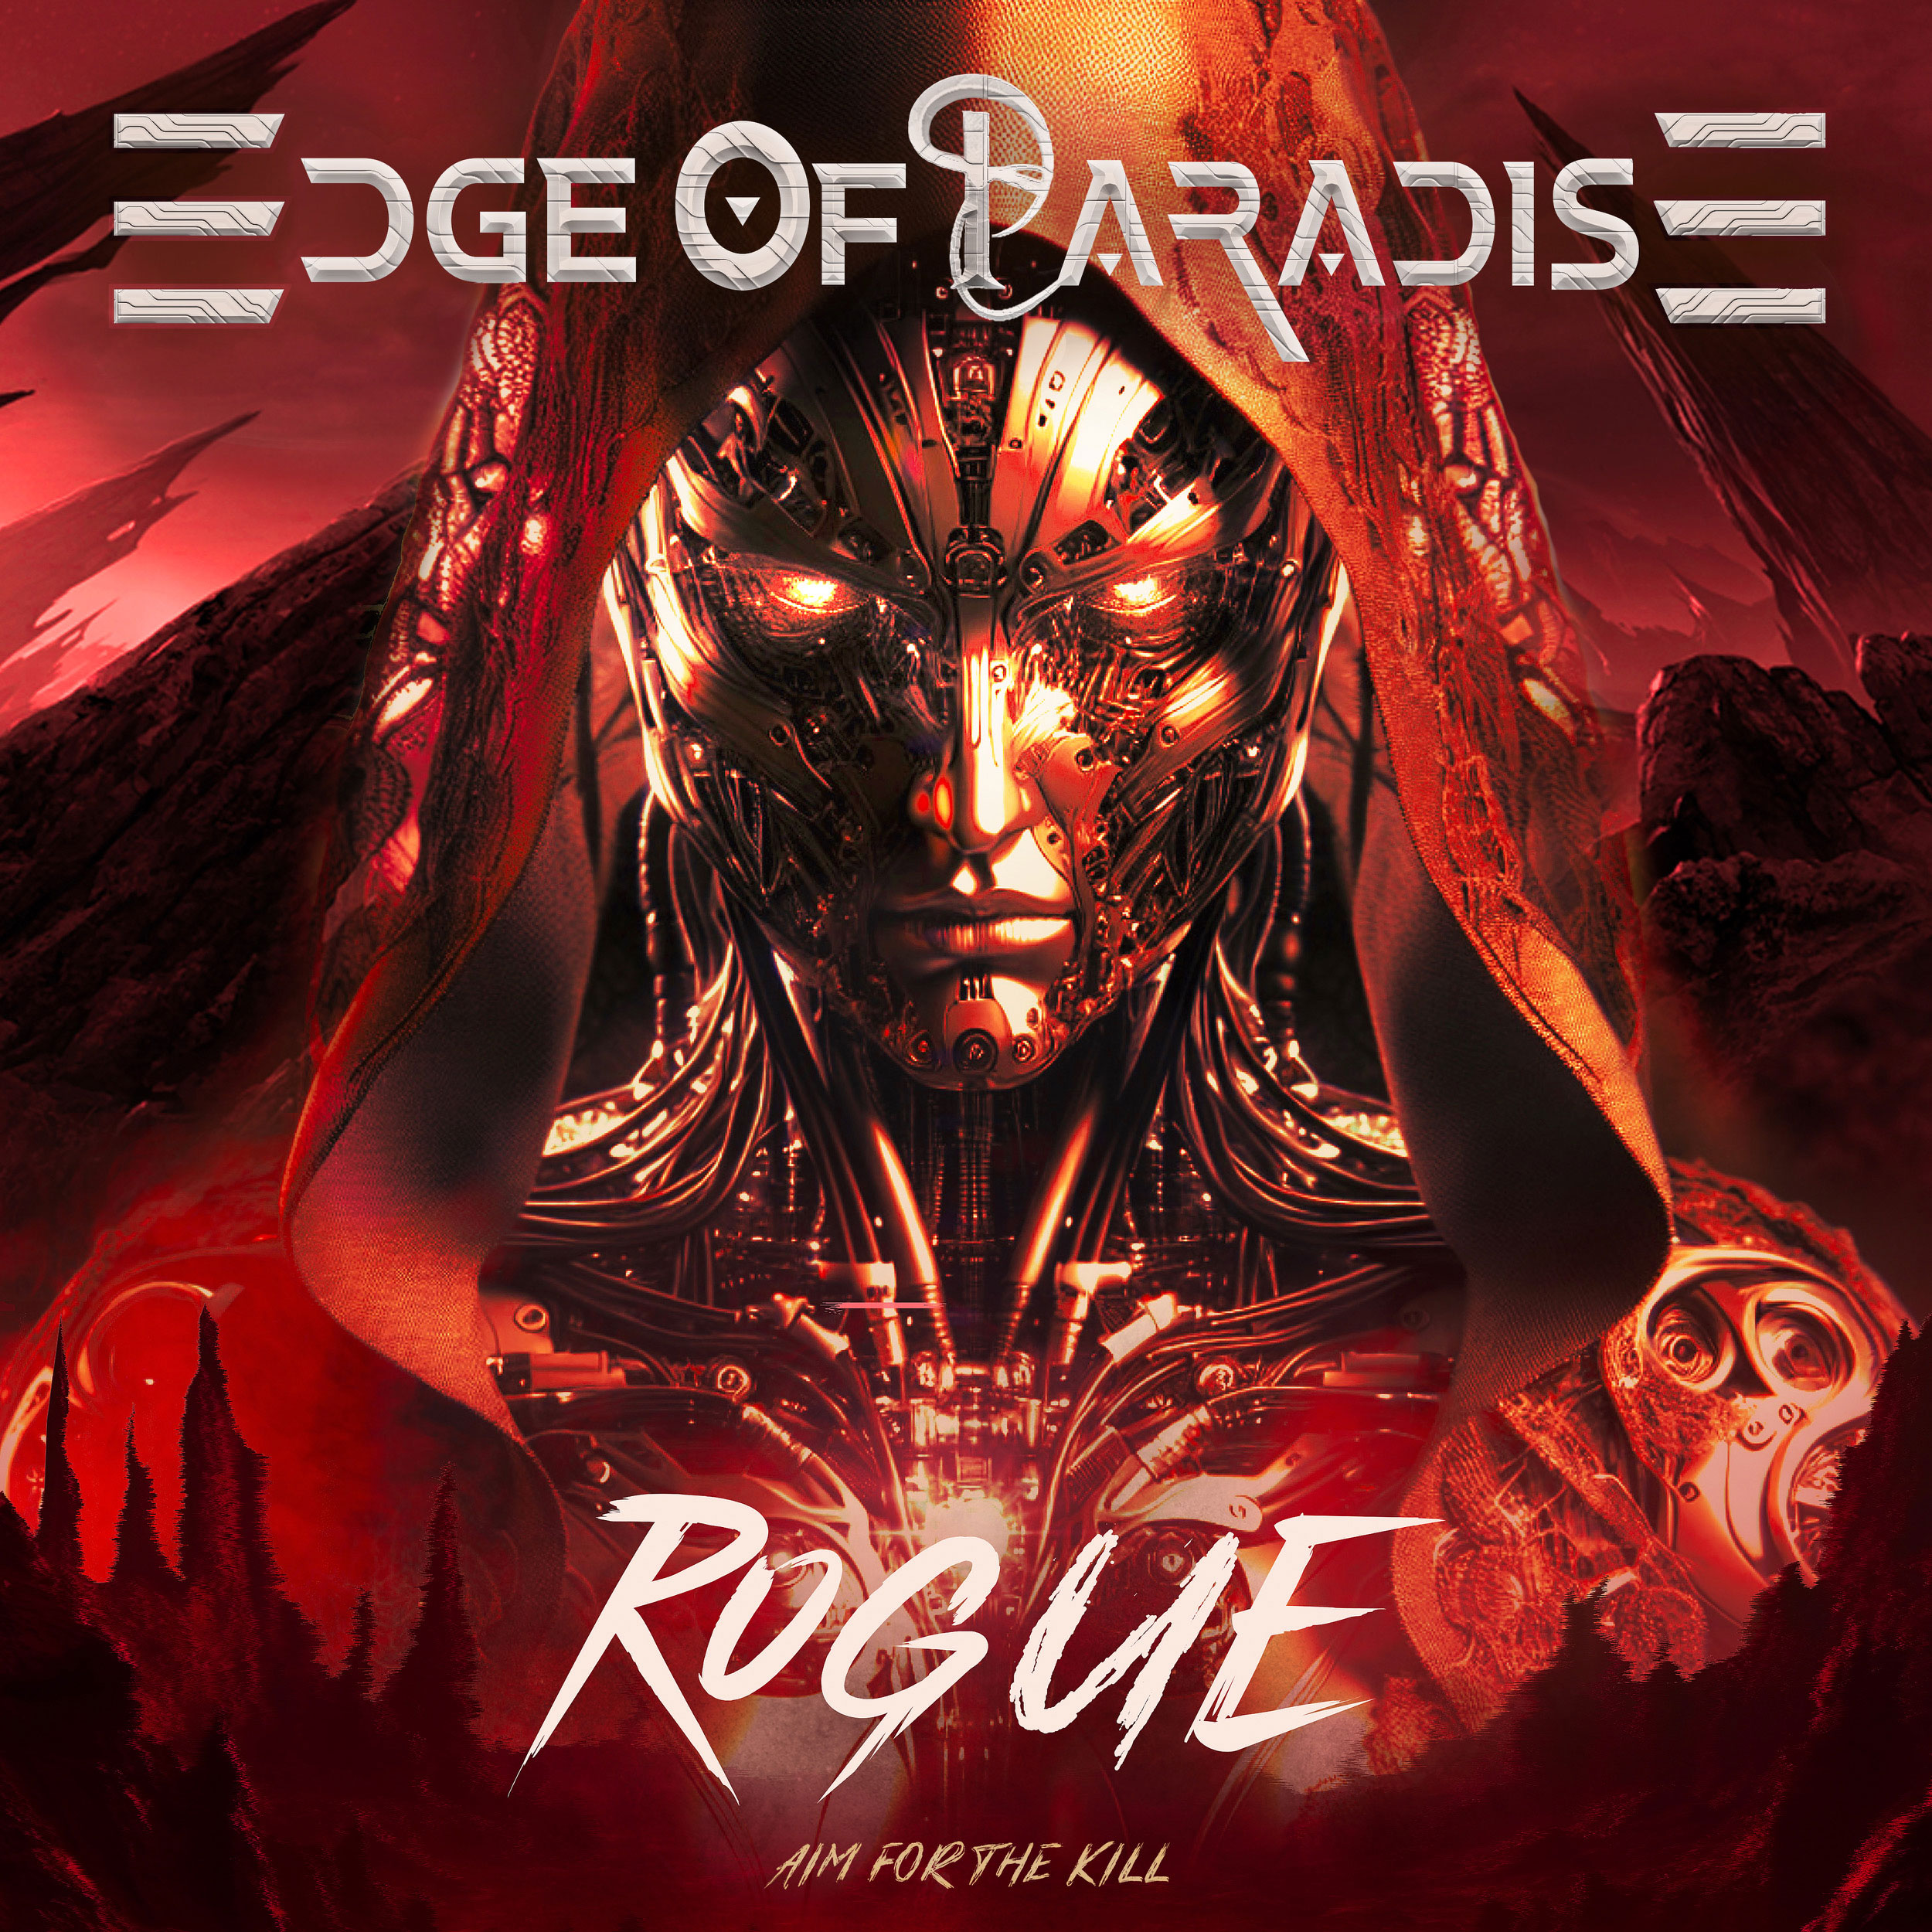  Explora los últimos lanzamientos: De la energía de Edge Of Paradise al estilo único de Mamita Papaya